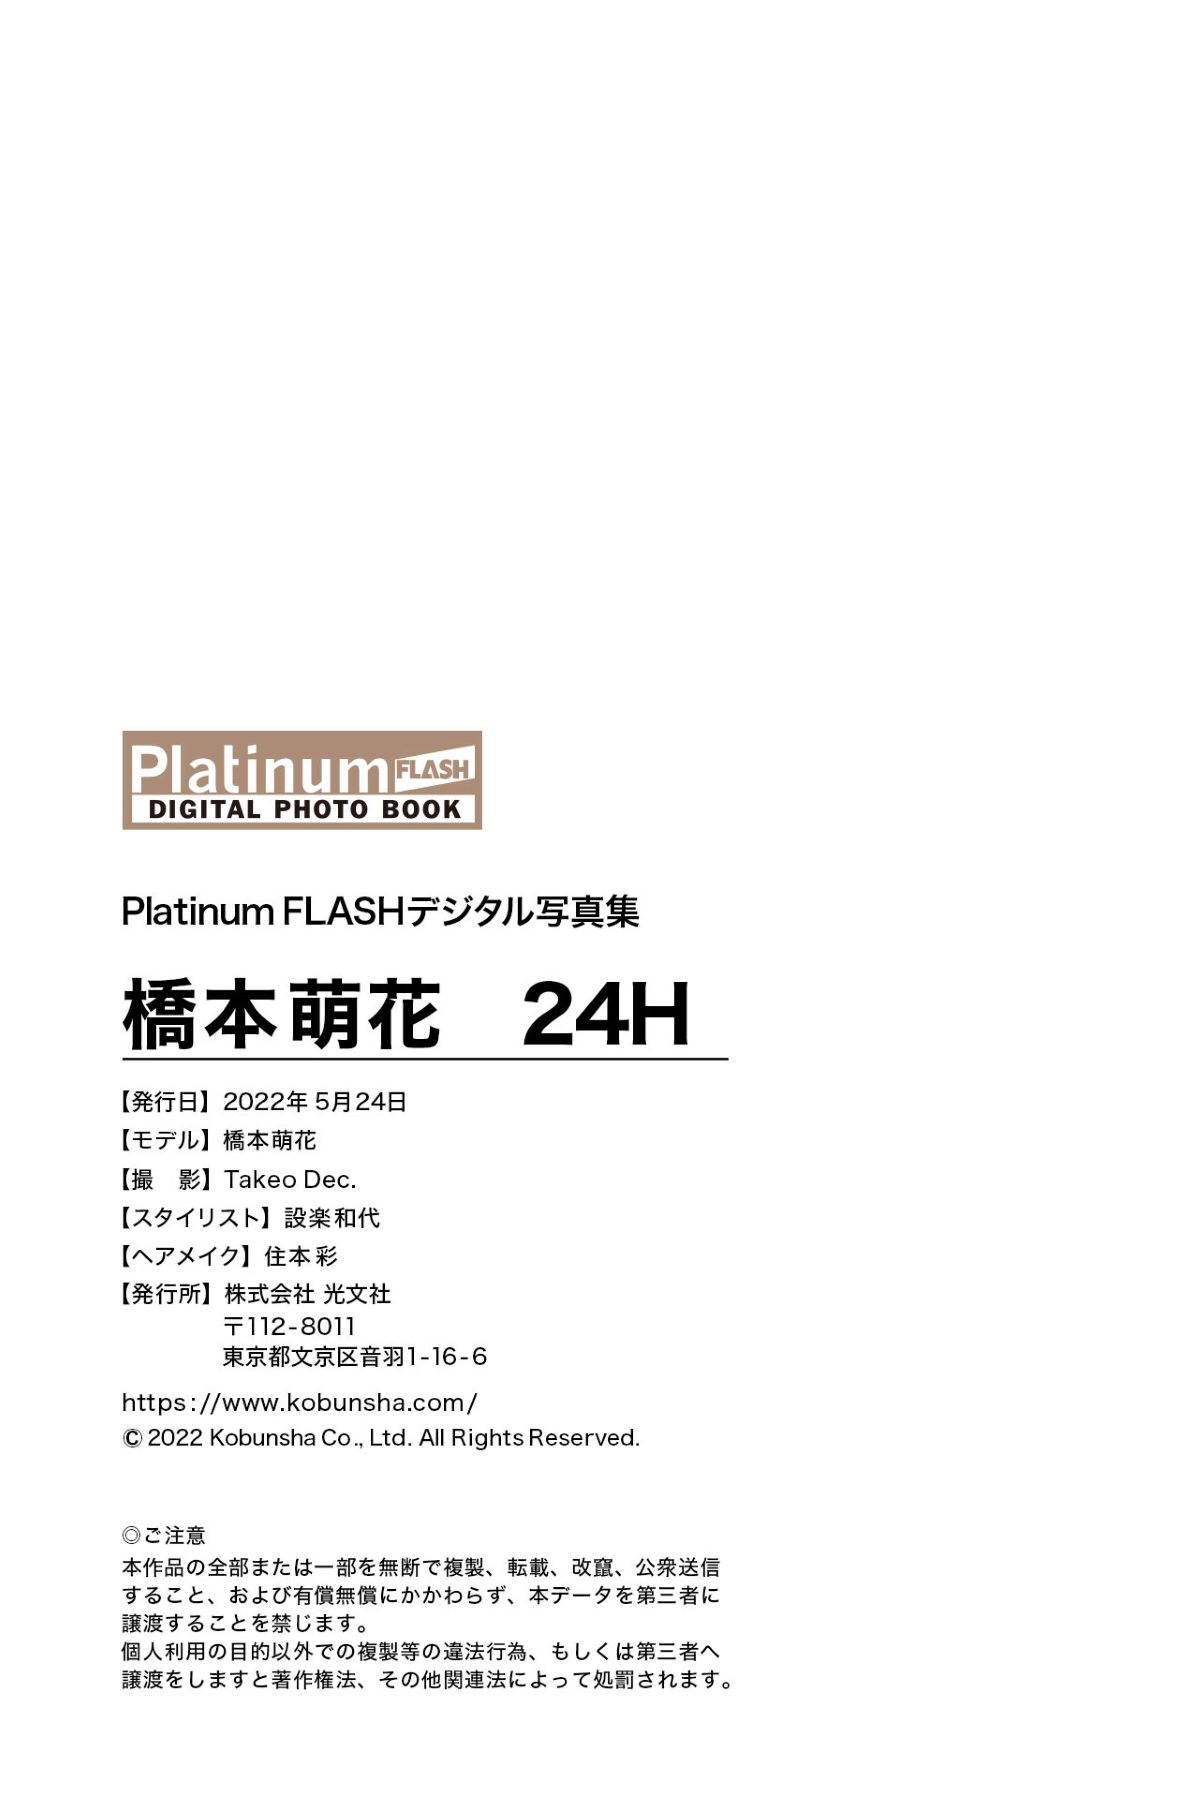 Platinum FLASH Photobook 2022 05 24 Moka Hashimoto 橋本萌花 24H 0077 7631693452.jpg